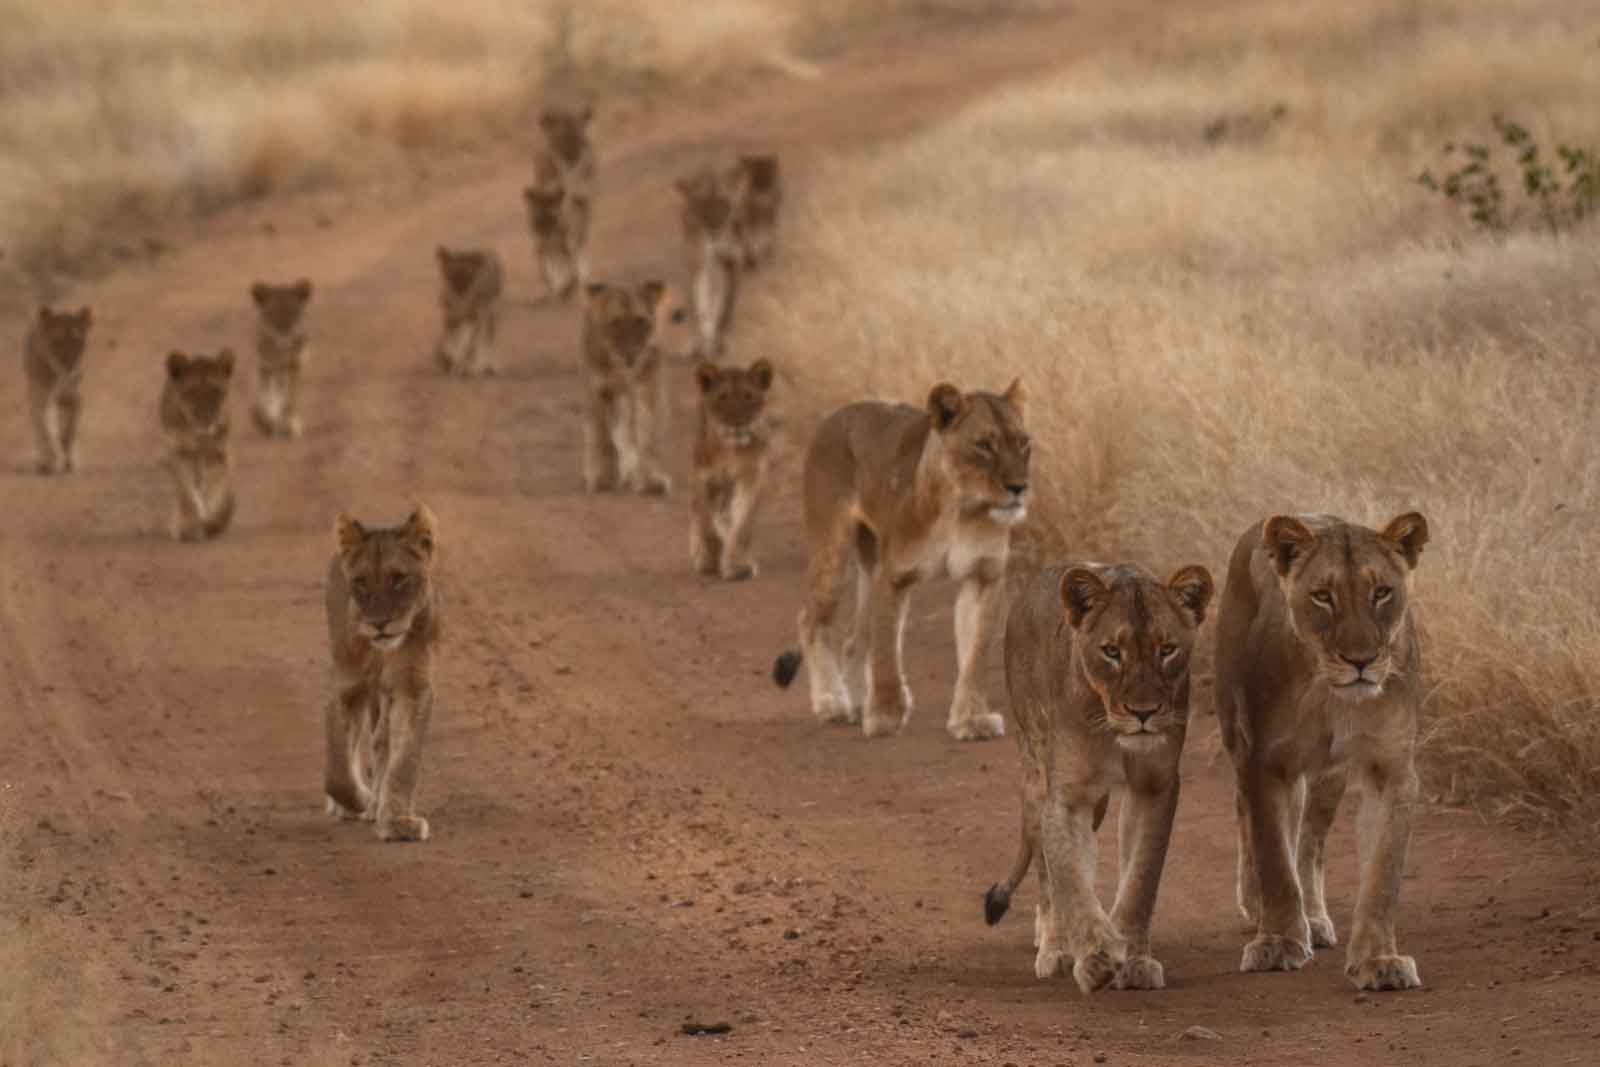 Maseke Pride of Lions at Chacma